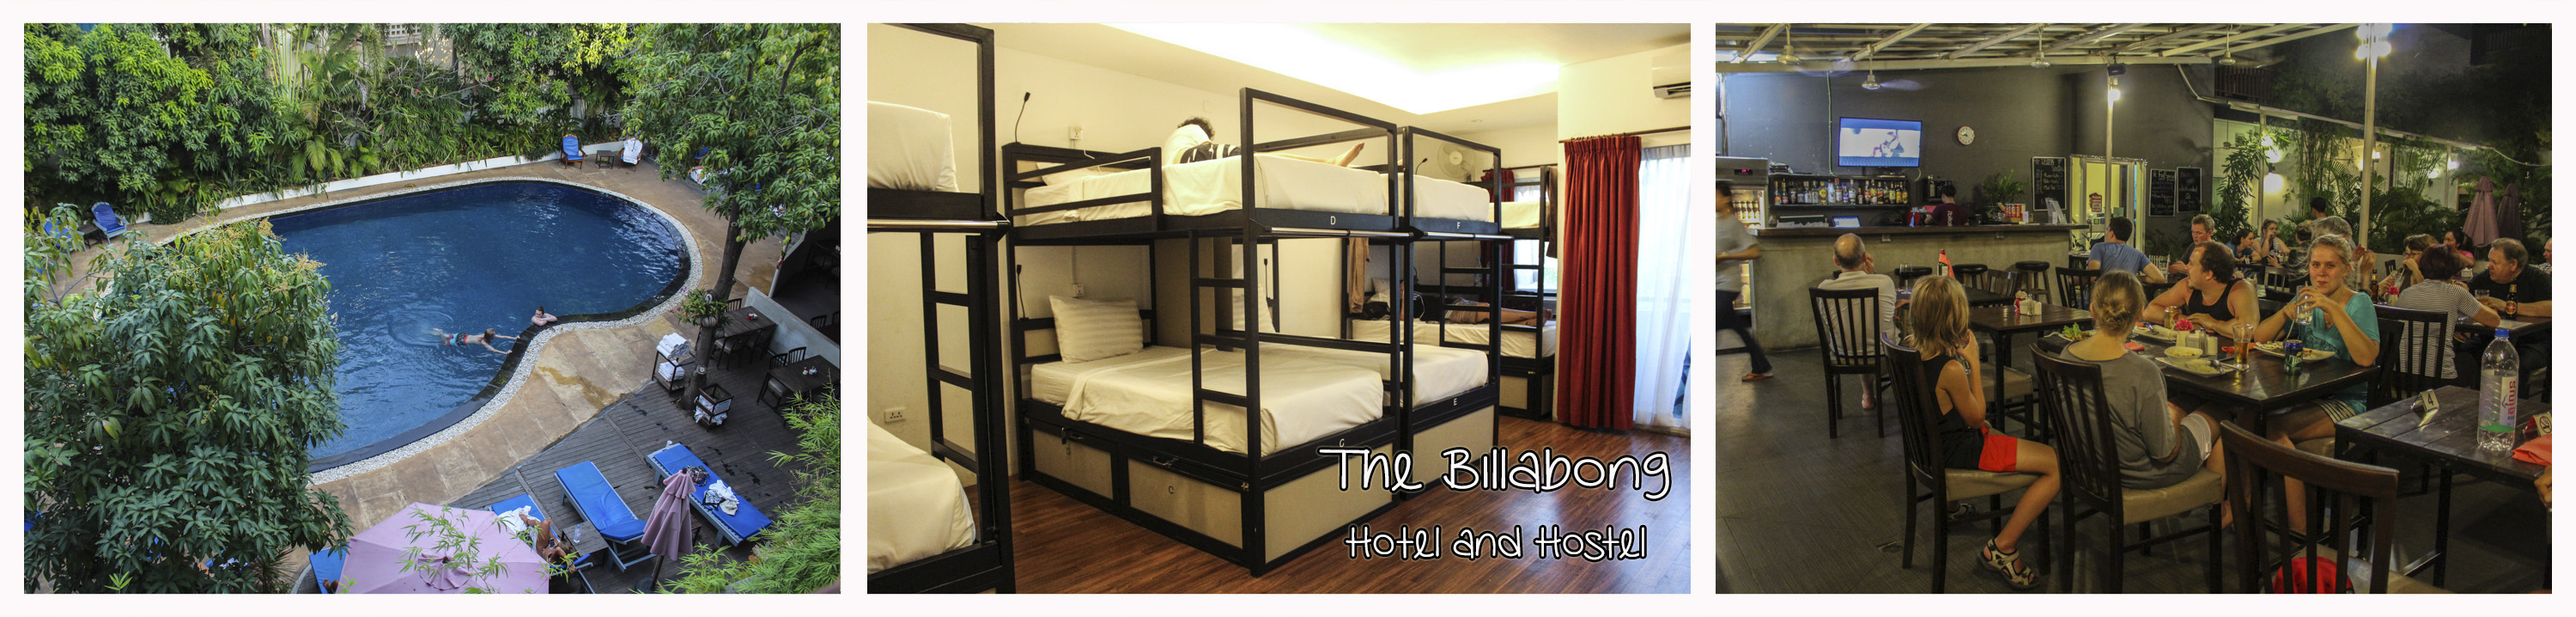 the-billabong-hotel-hostel